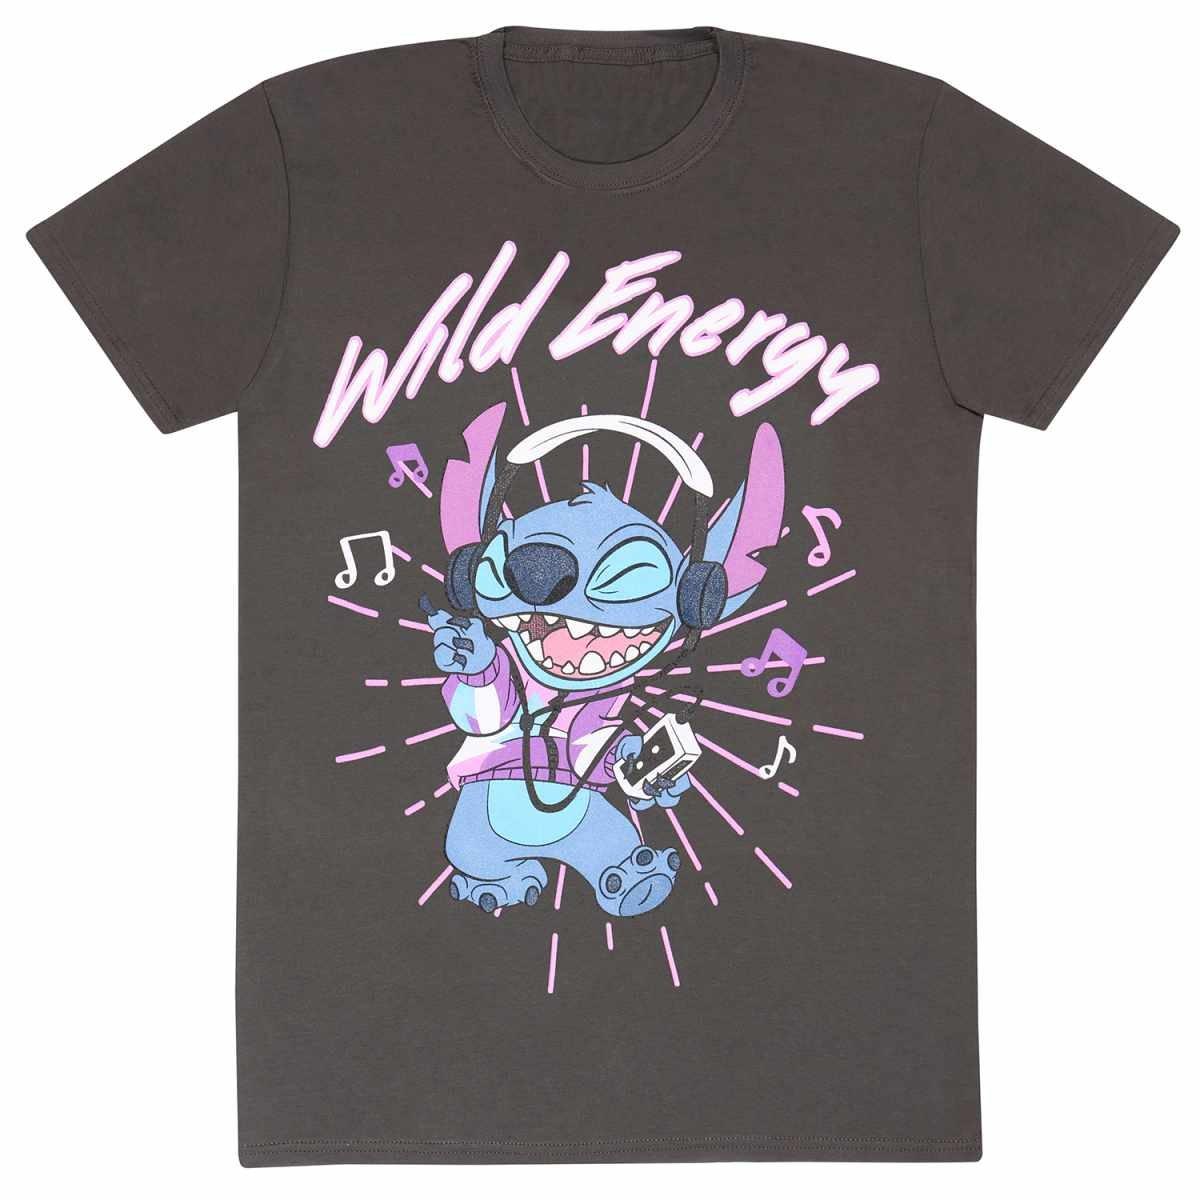 Wild Energy Tshirt Herren Charcoal Black L von Lilo & Stitch